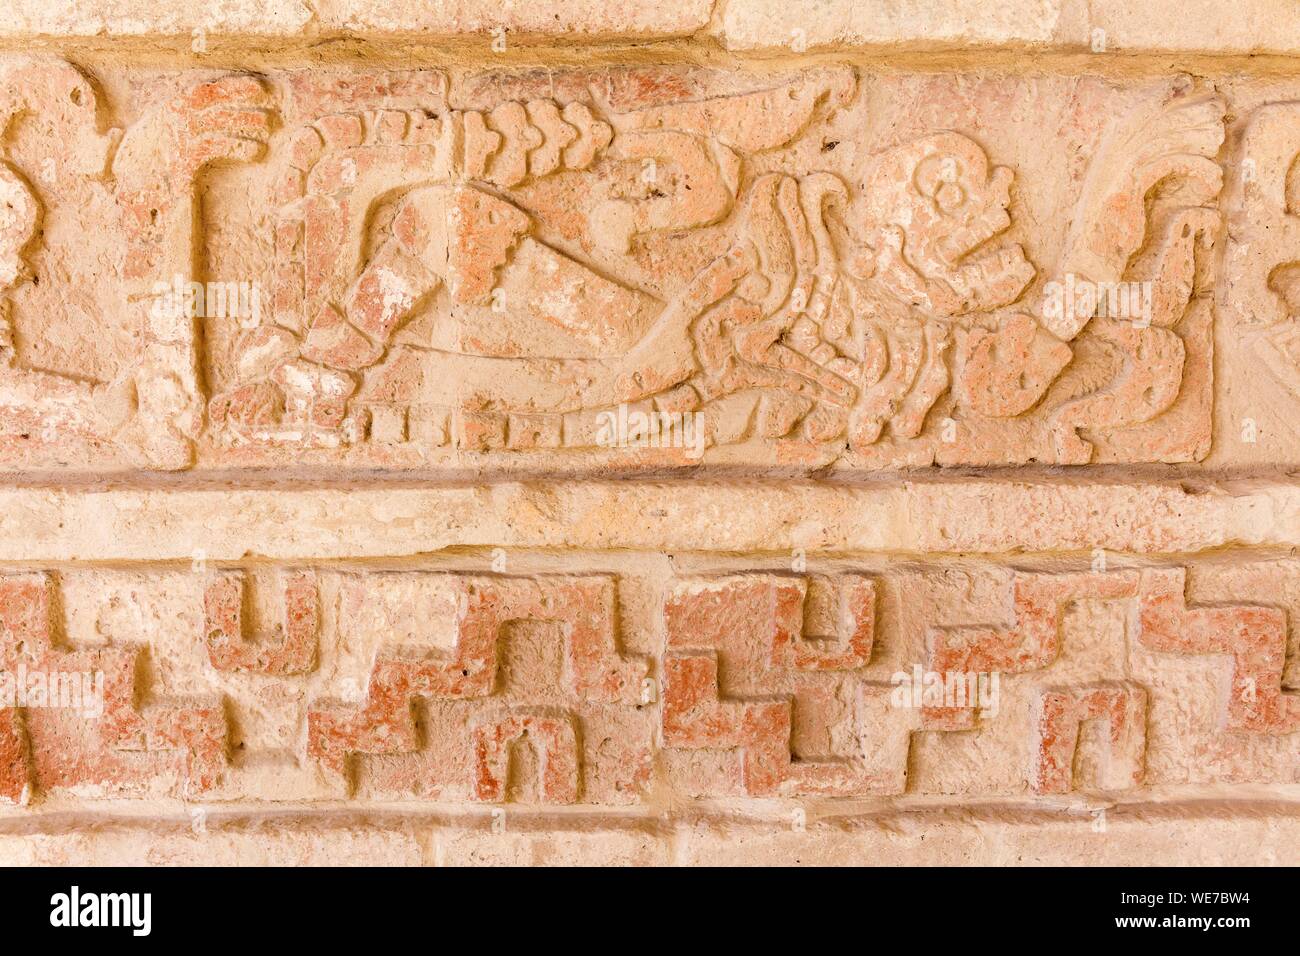 Messico, Hidalgo membro di Tula de Allende, Toltec sito archeologico, Coatepantli o parete di serpenti Foto Stock